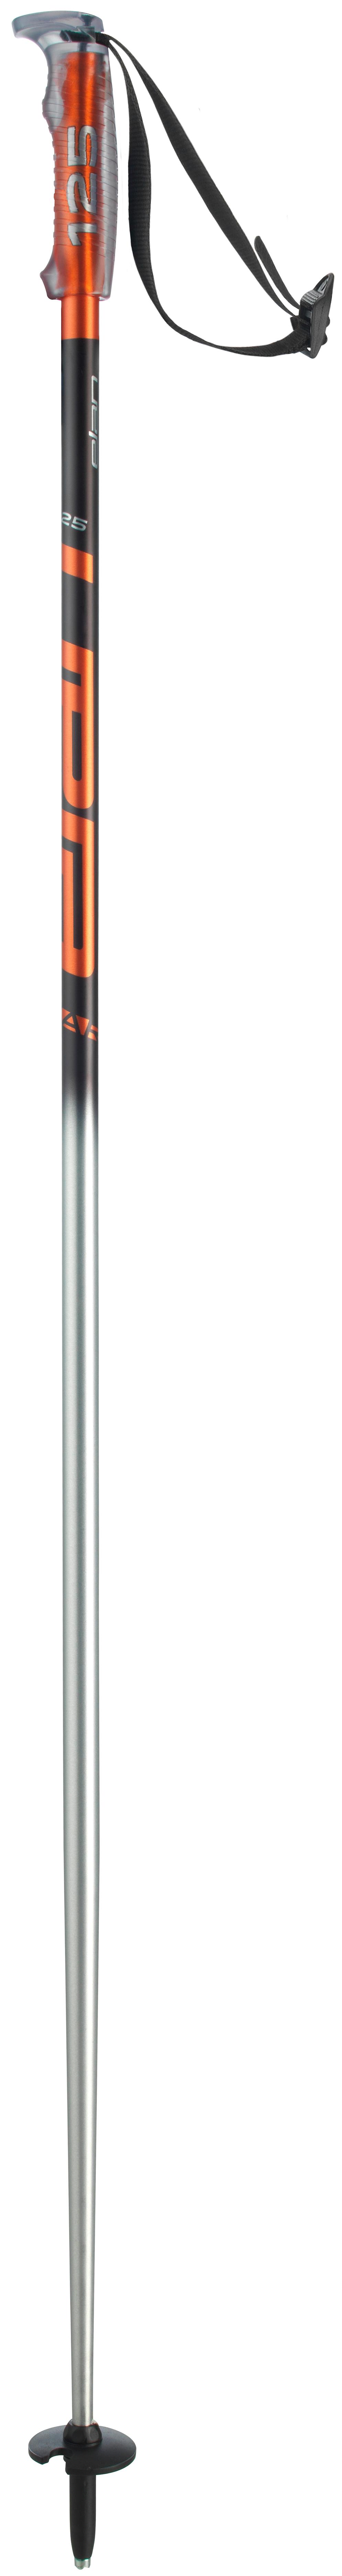 Горнолыжные палки Elan Sp Exar 2021, black silver, 110 см